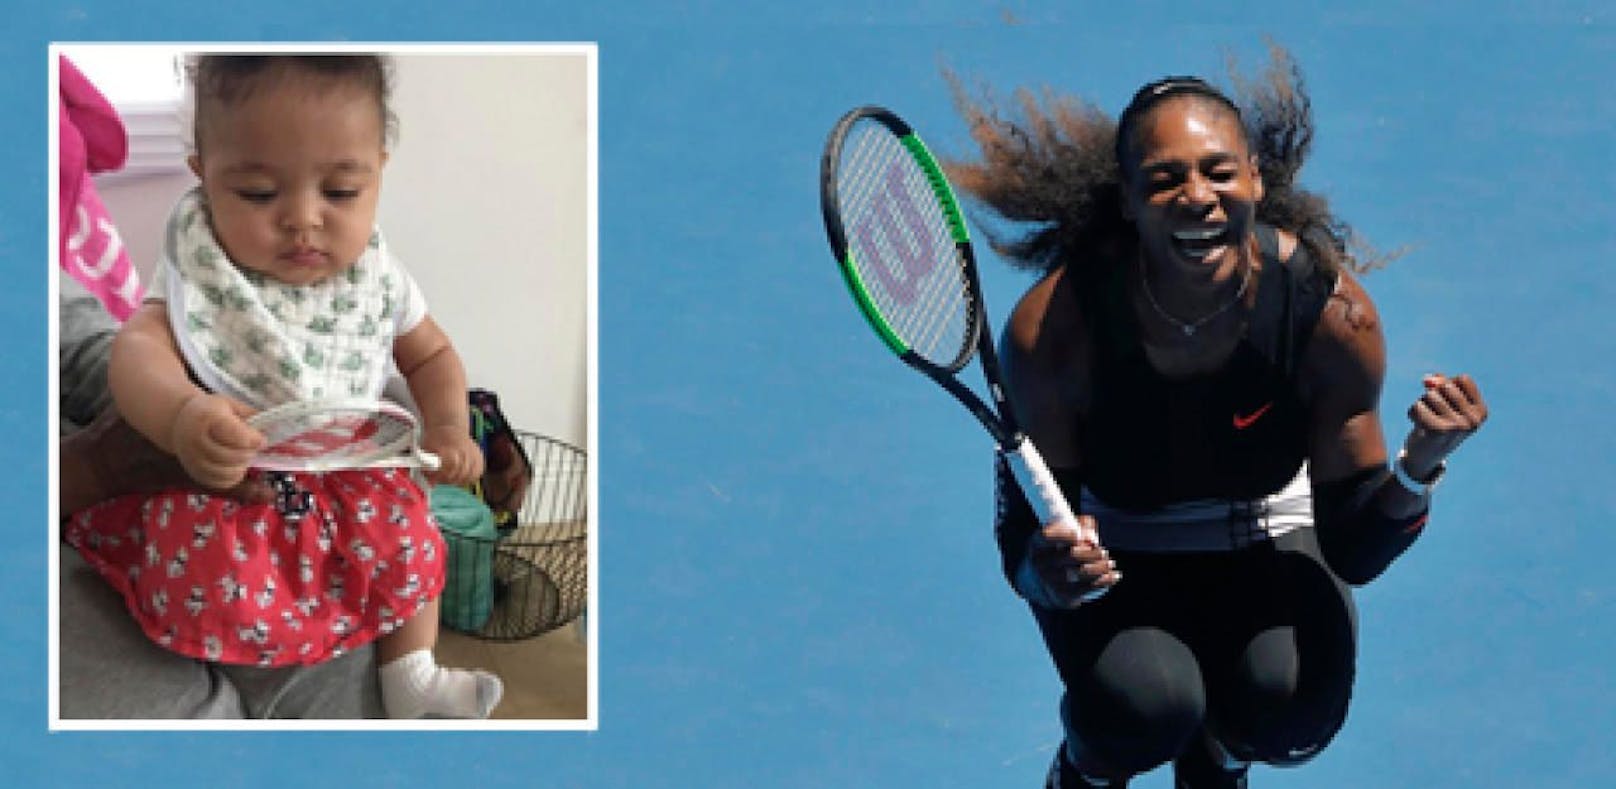 Serenas Tochter entzückt mit ihrem ersten Racket